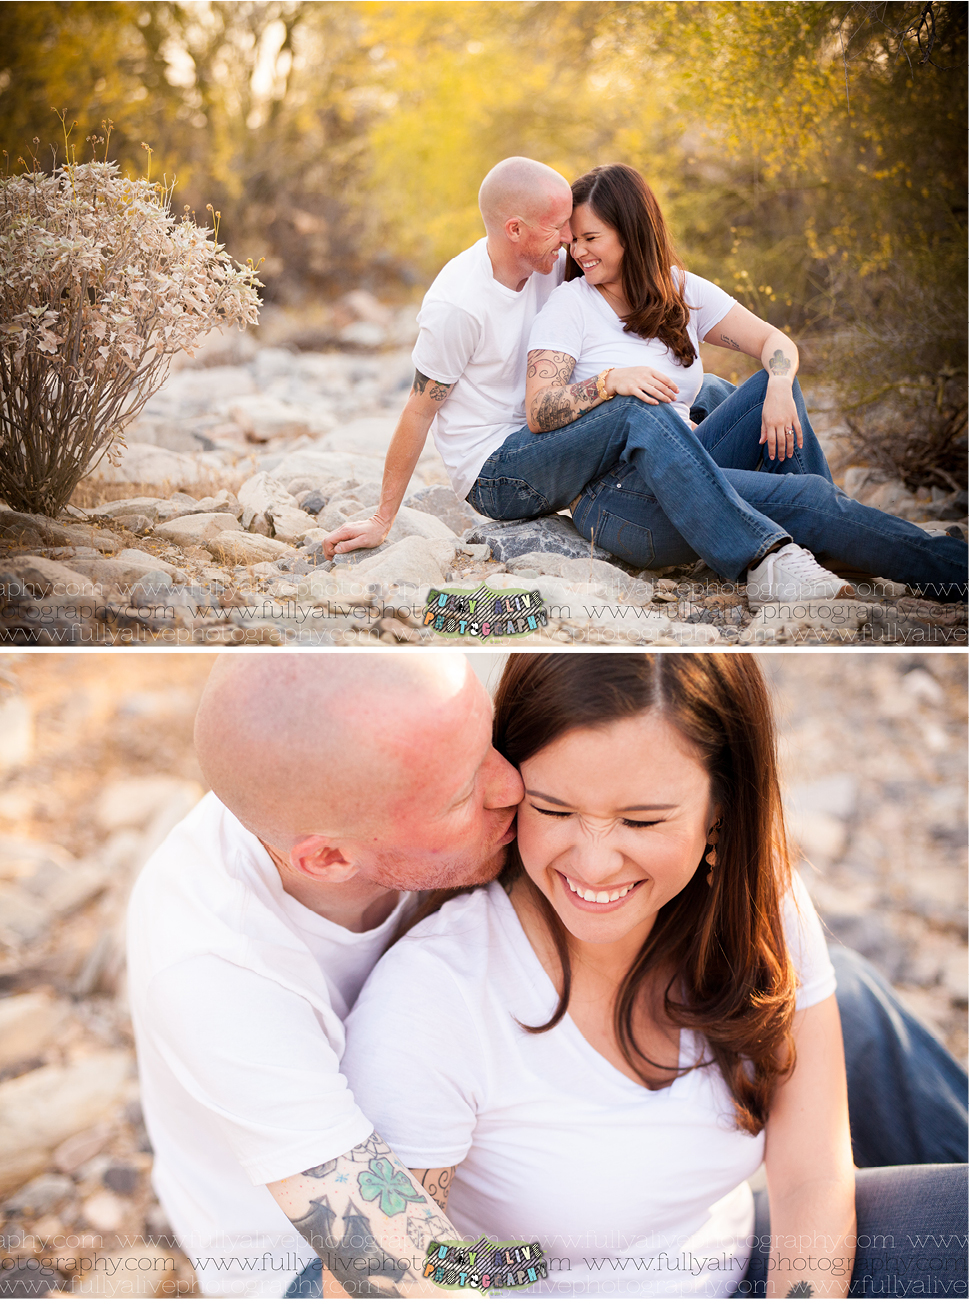 Fully Alive Photography | Scottsdale Engagement Session  | Justin + Amanda